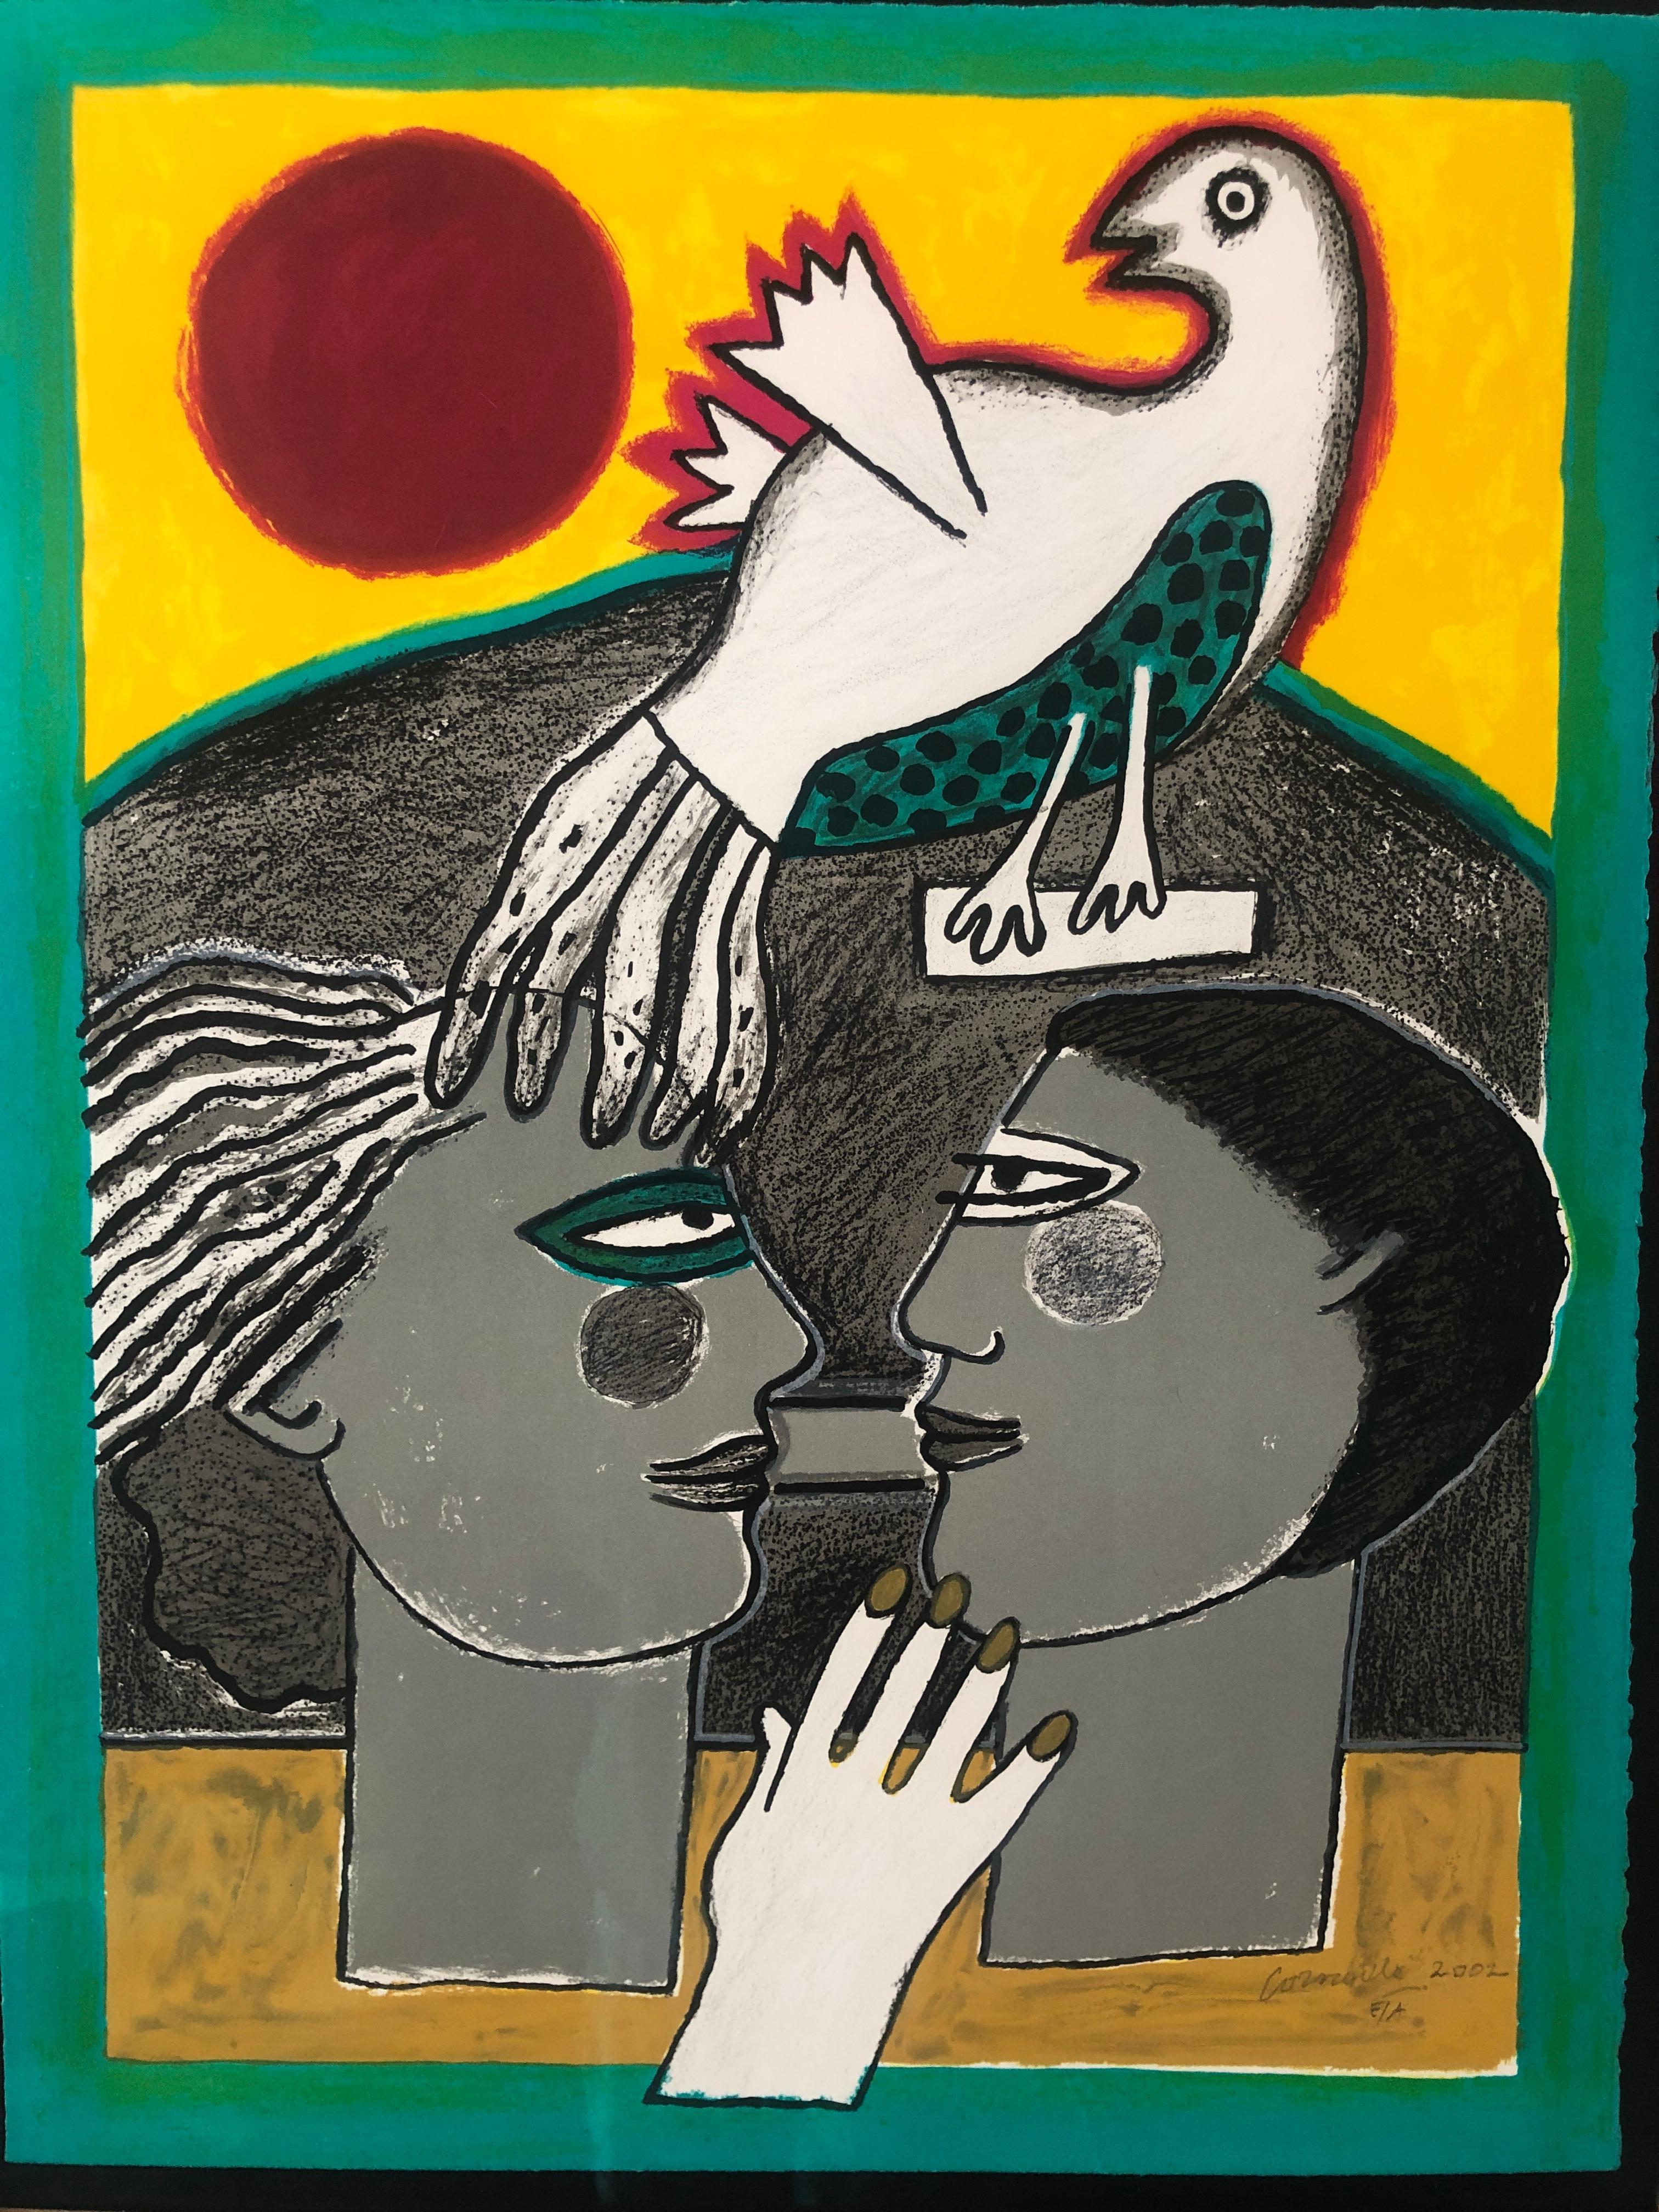 Originallithografie des Malers Guillaume Corneille (1922-2010), geboren in Lüttich als Sohn niederländischer Eltern, Gründungsmitglied der Cobra-Bewegung. 

Ein magisches Werk, das durch seine Farben besticht. Vom Künstler mit Bleistift signiert